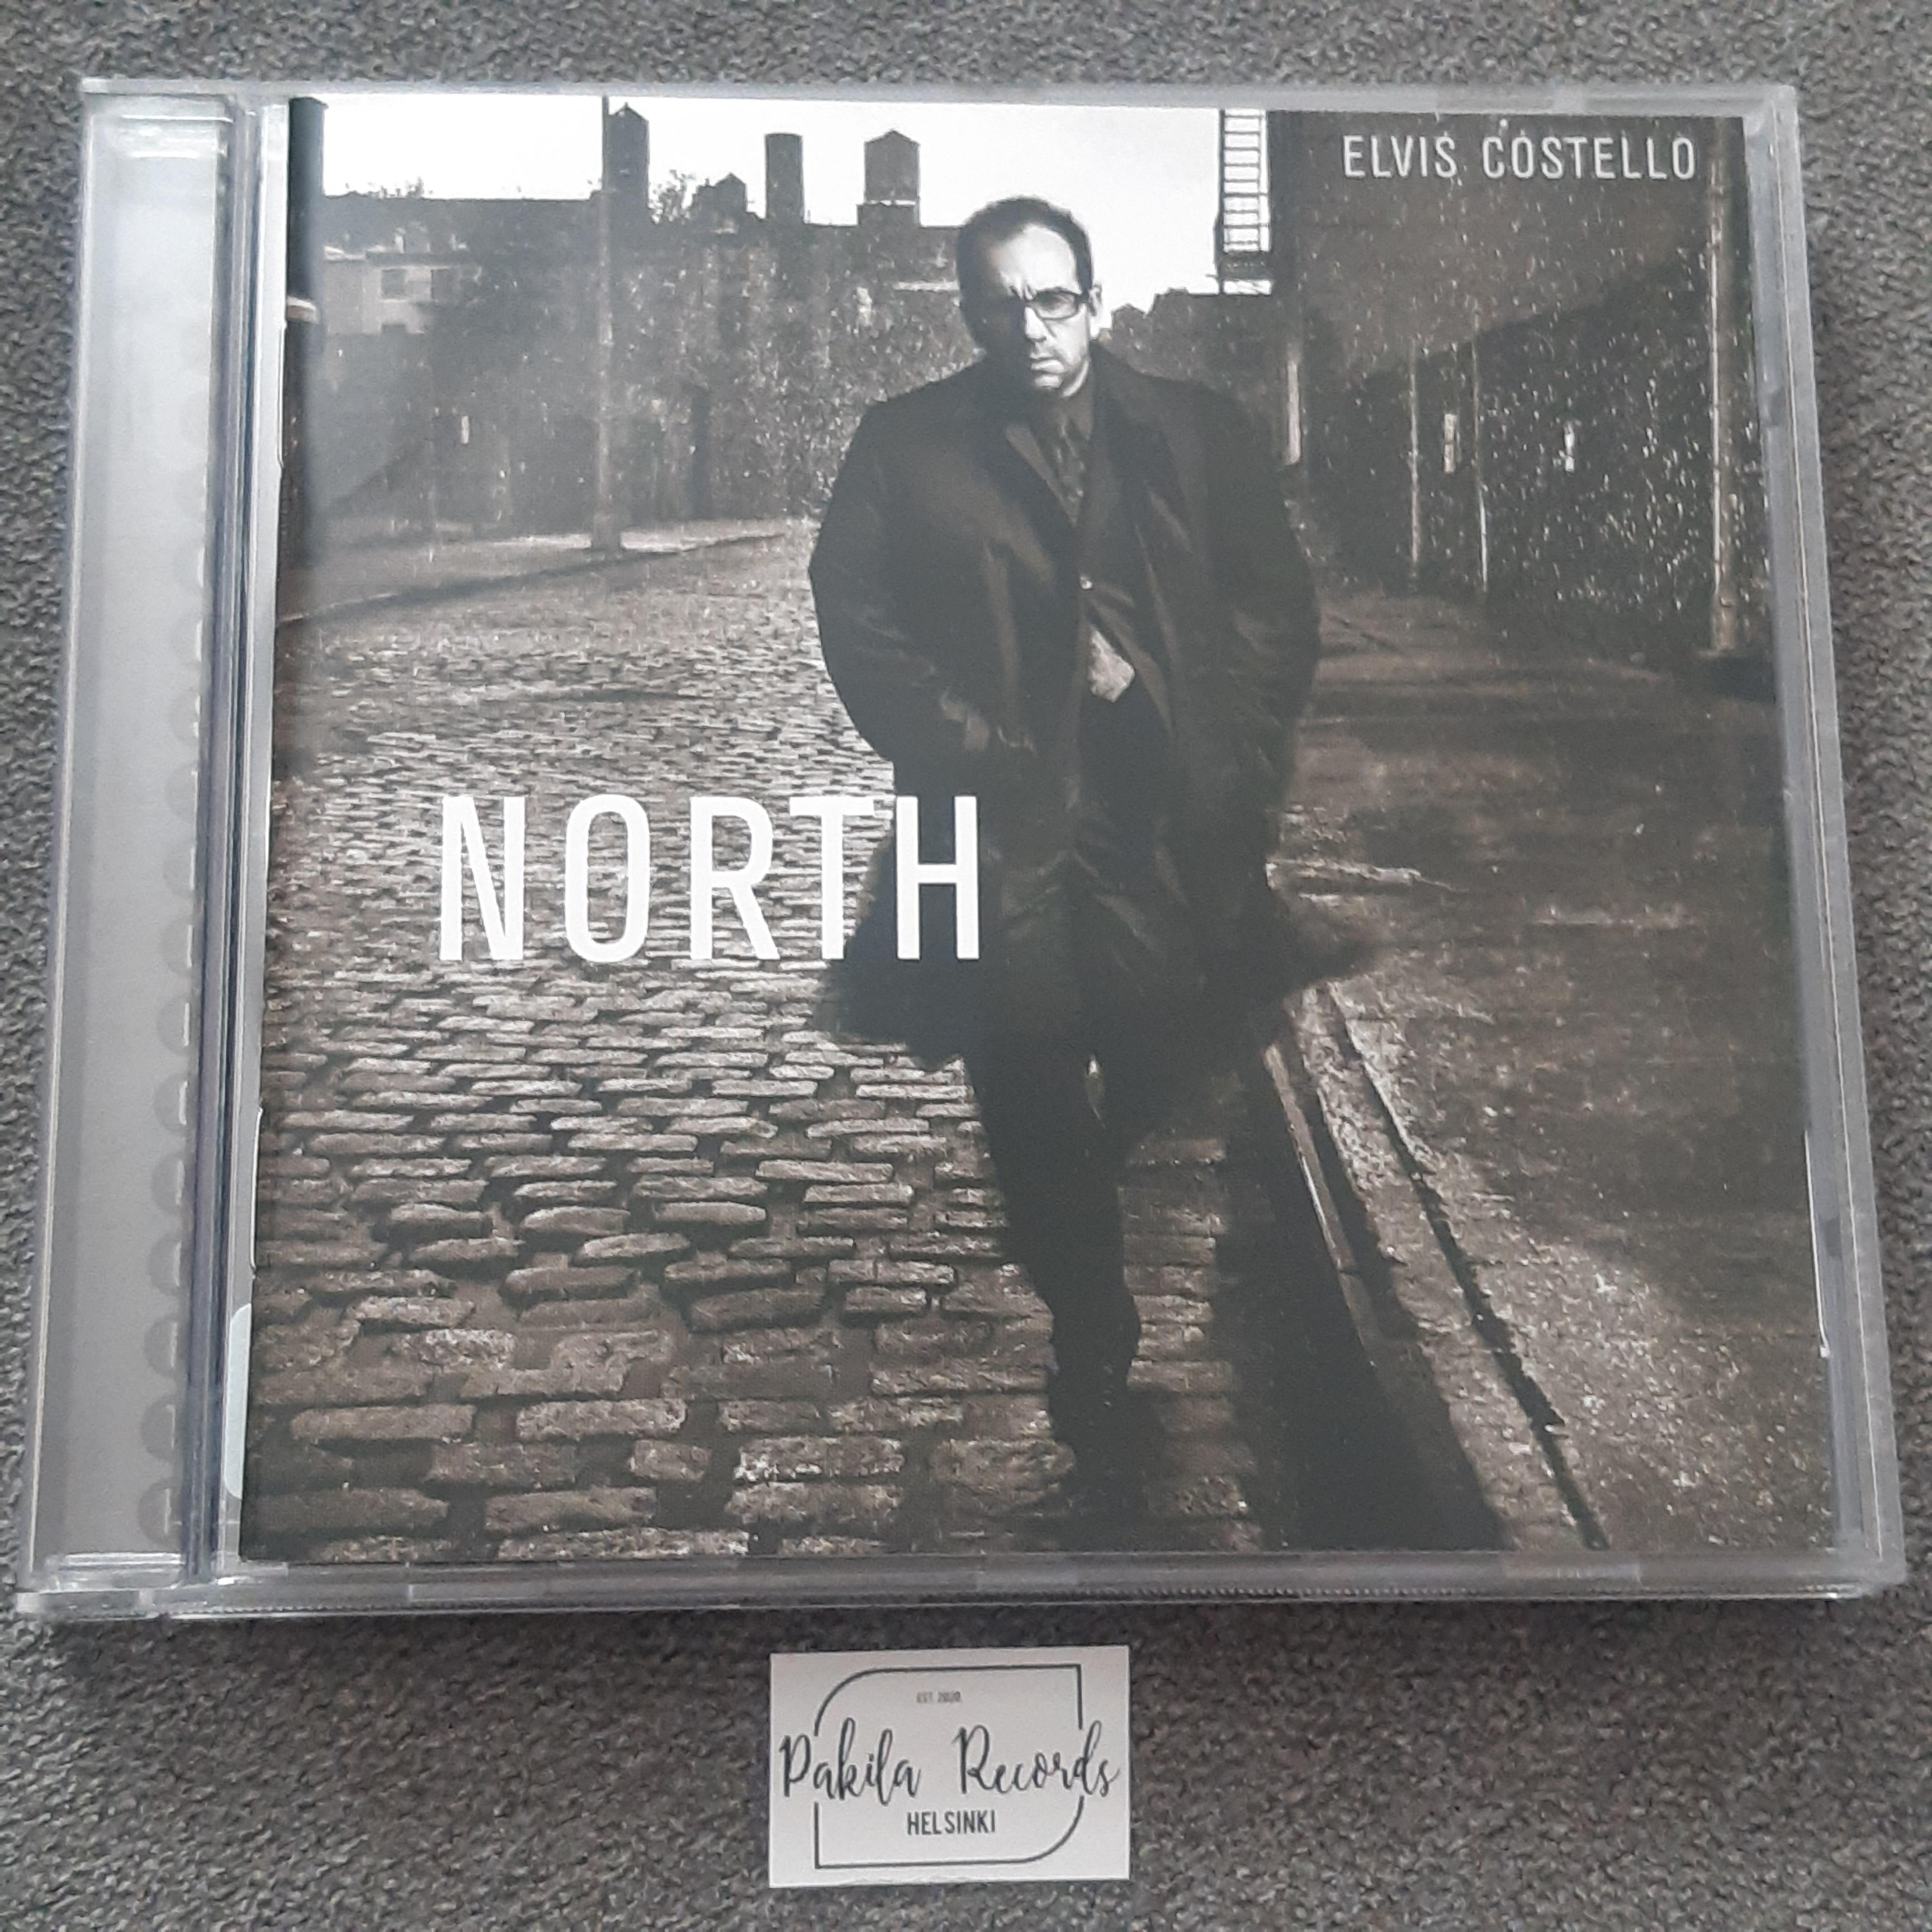 Elvis Costello - North - CD (käytetty)